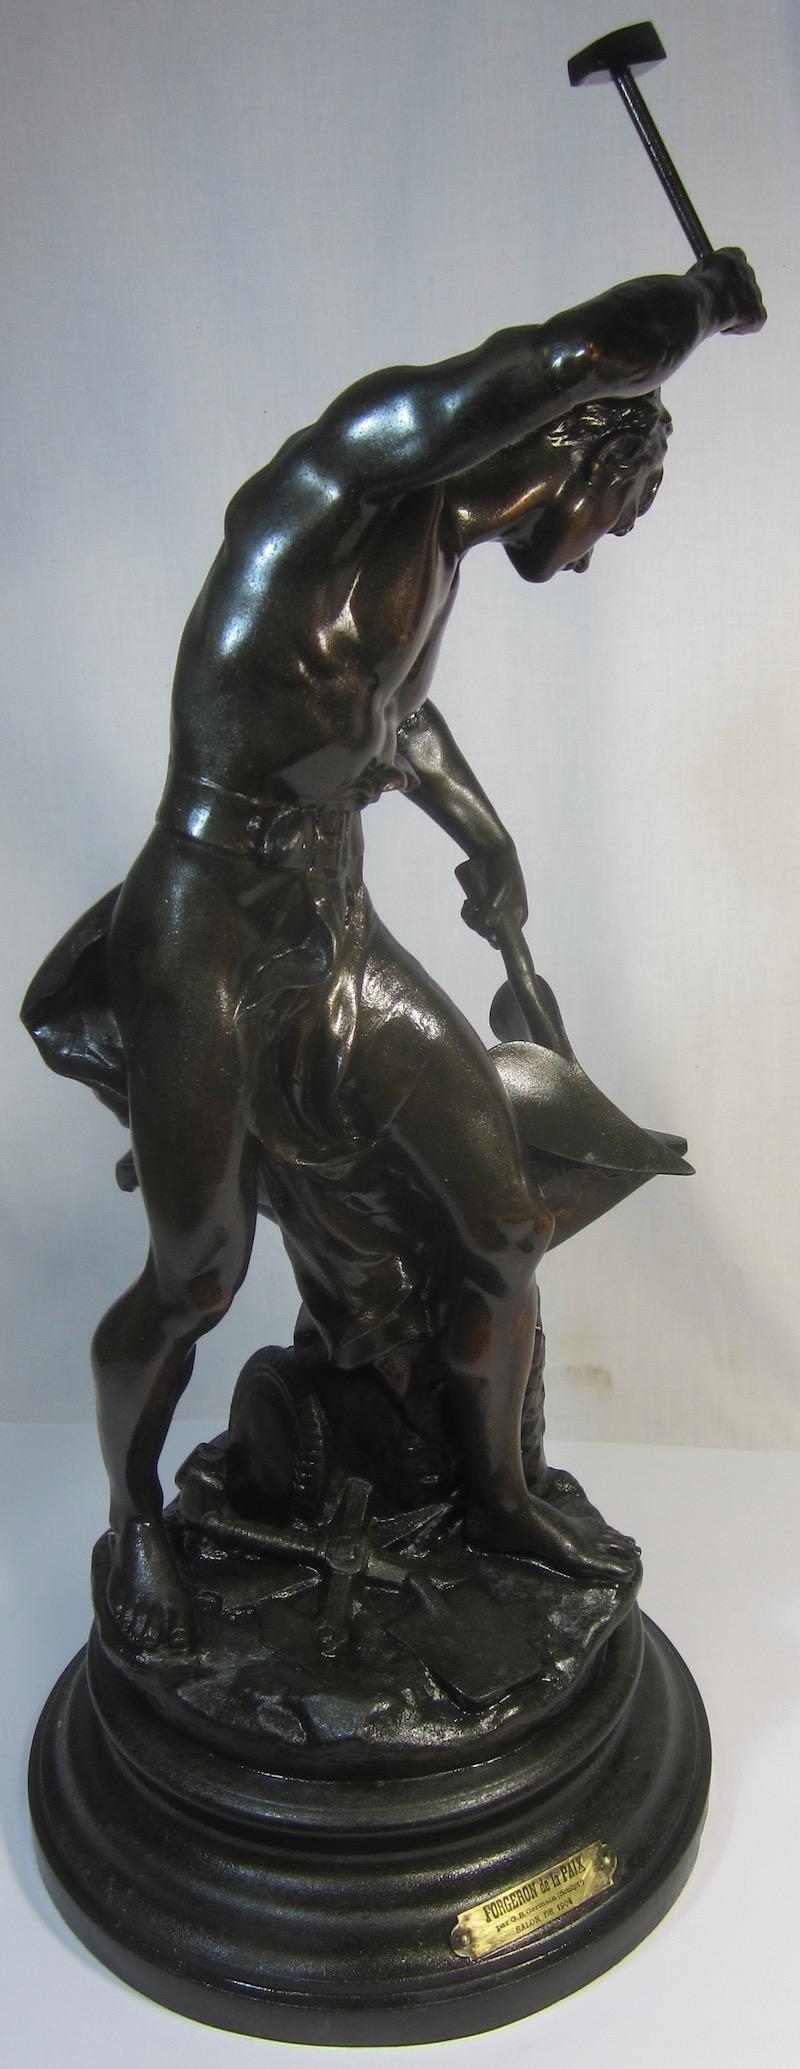 Bronzed Spelter Figure, The Forger of Peace 'Forgeron de la Paix' 1